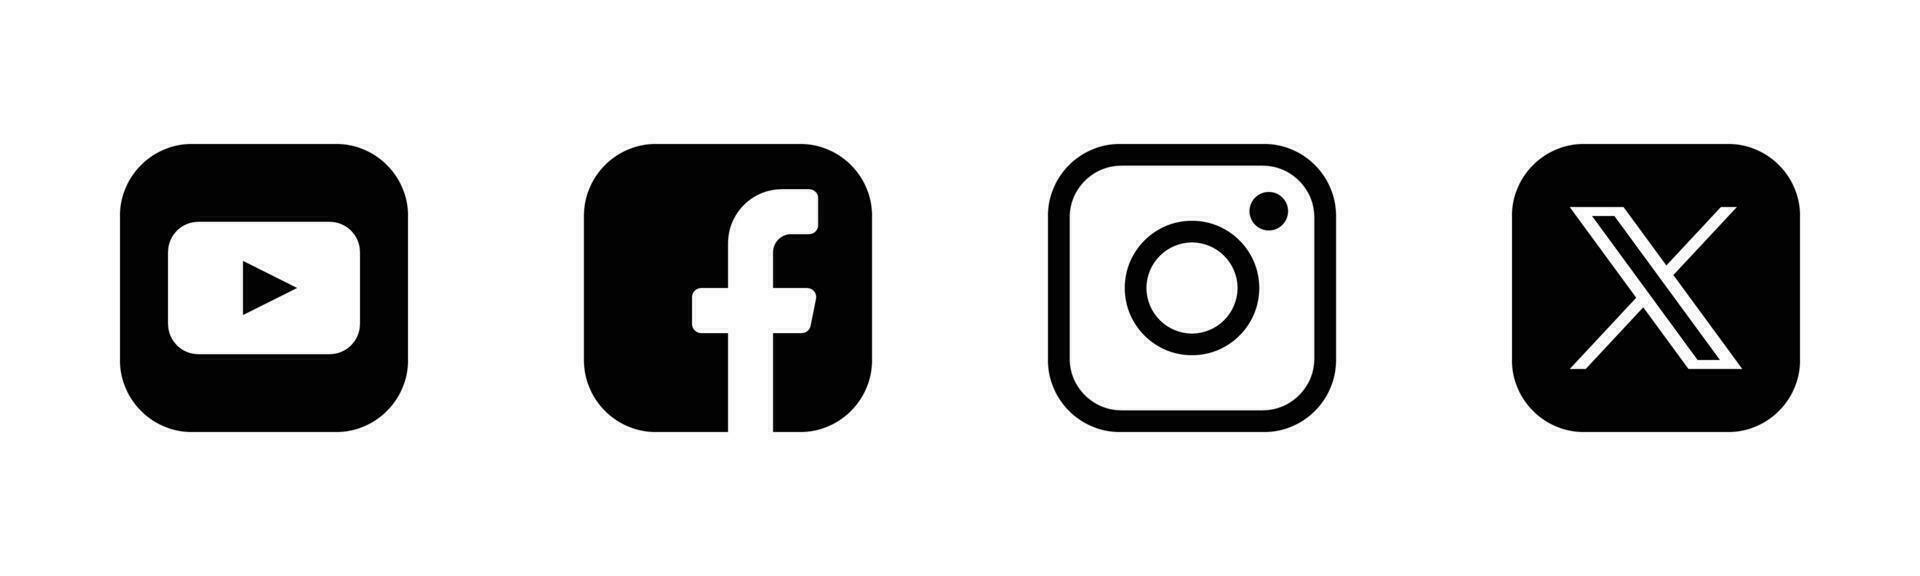 social medios de comunicación logo íconos conjunto - Facebook, instagram, gorjeo, Youtube símbolos vector